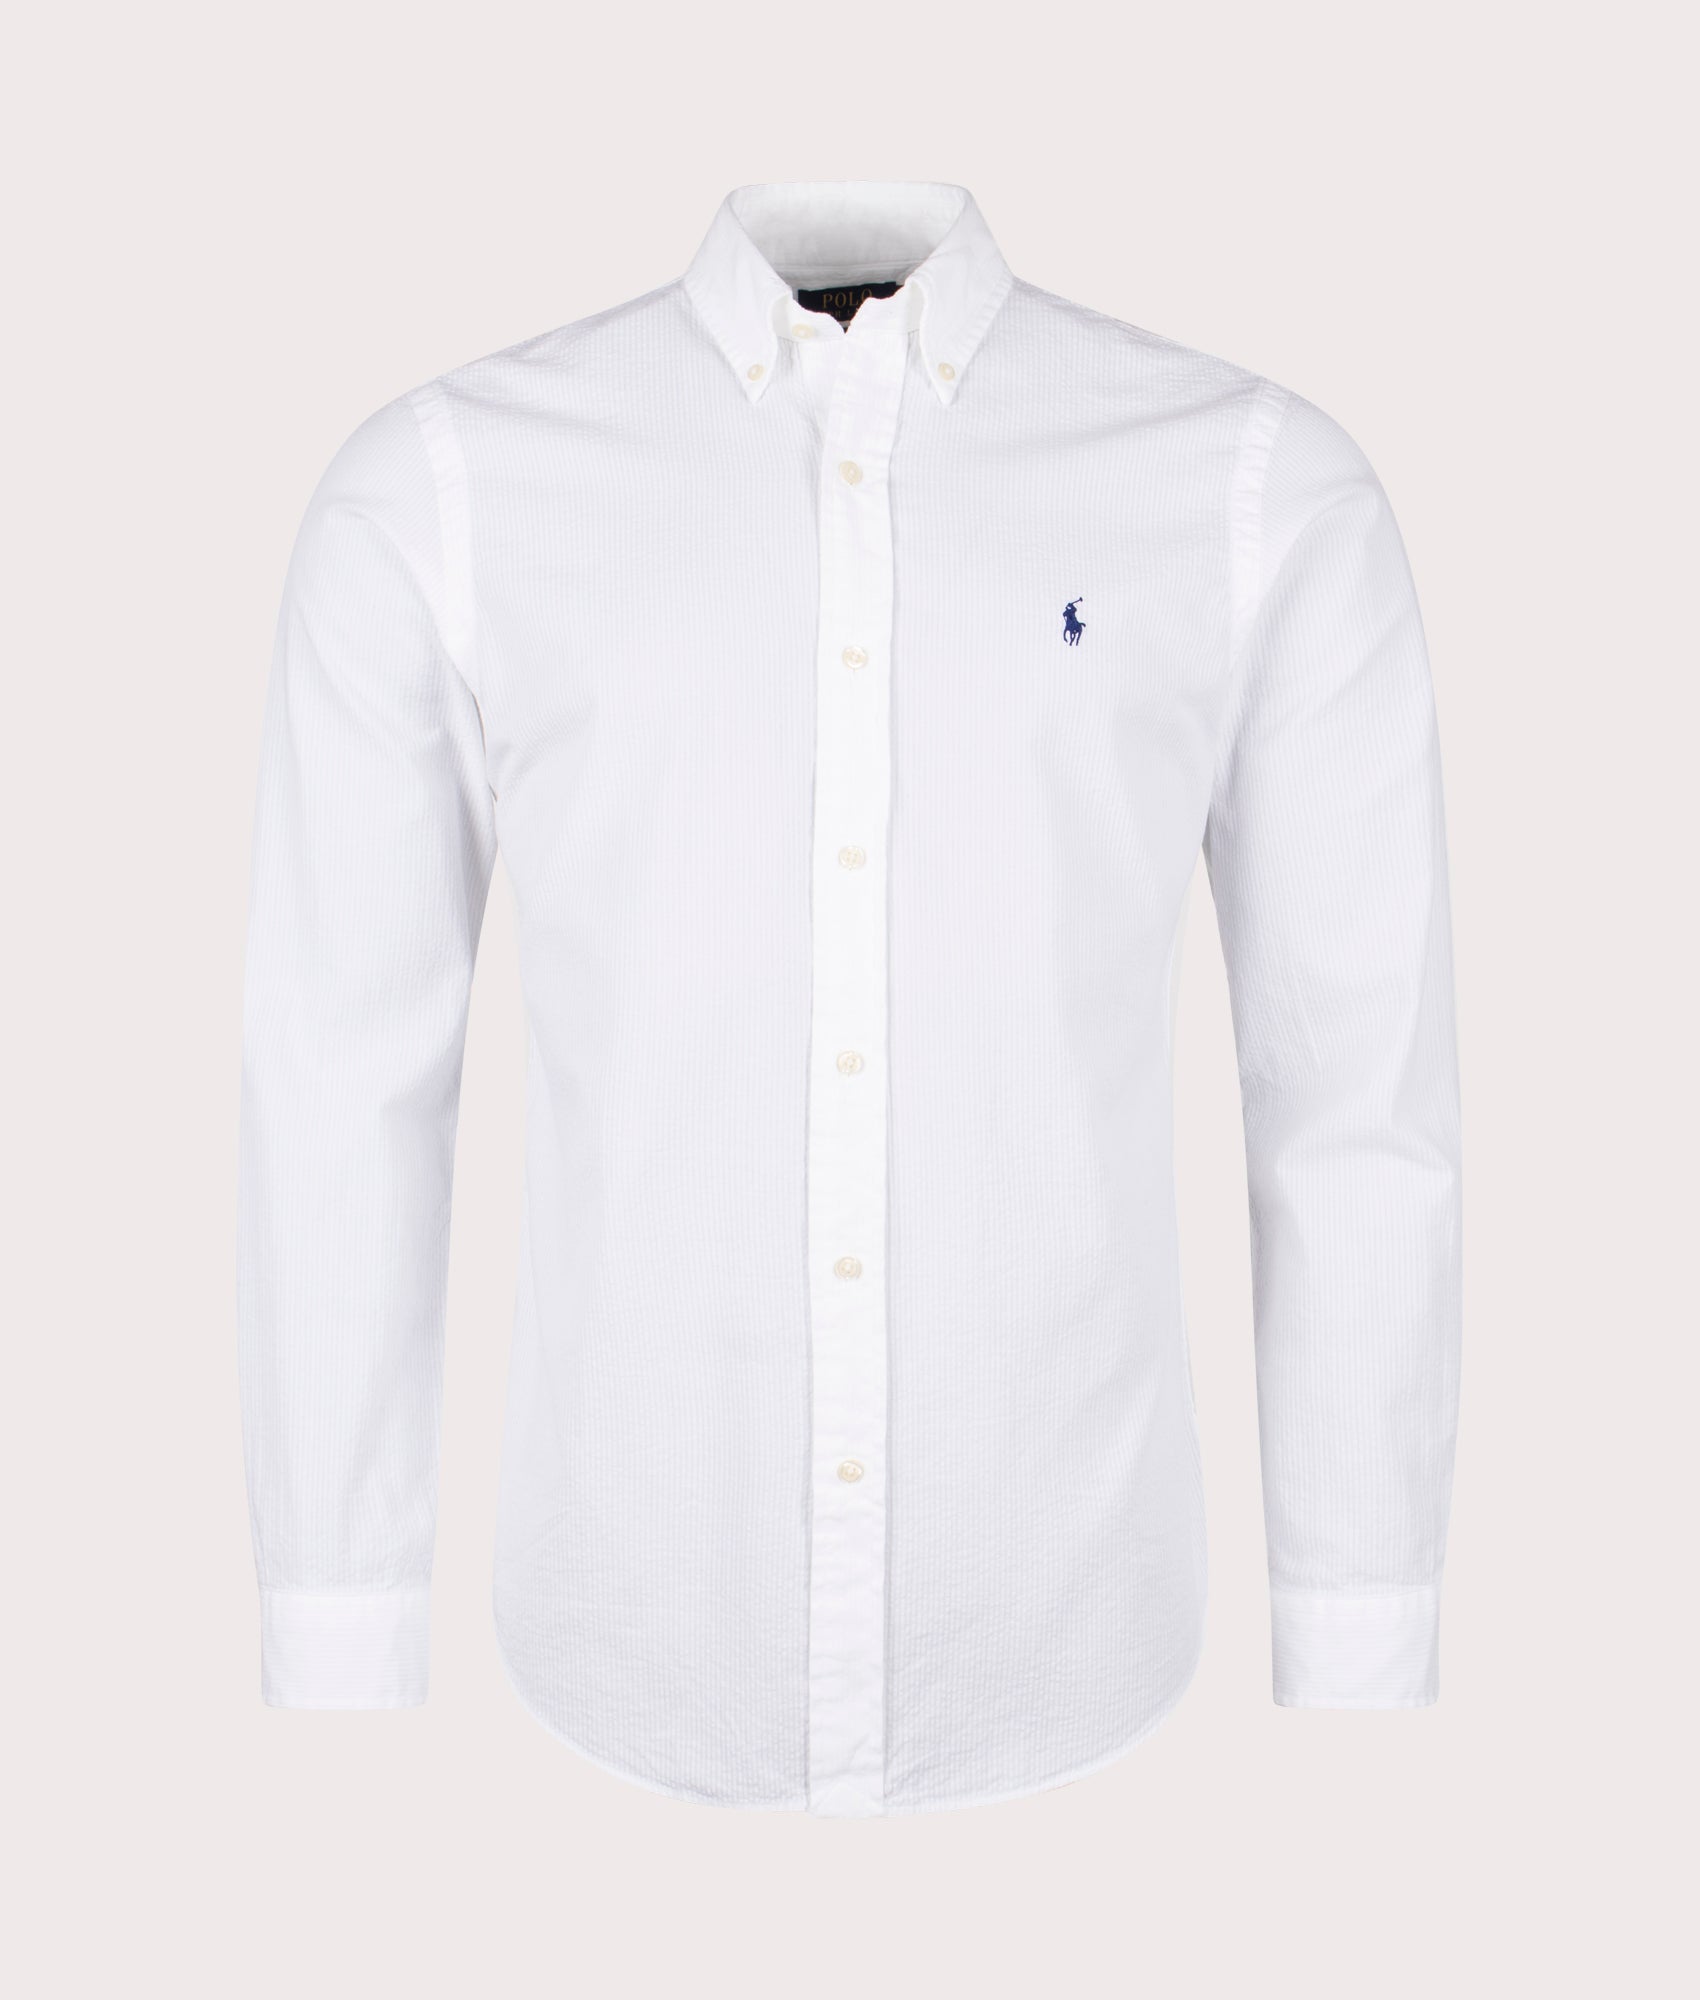 Polo Ralph Lauren Mens Custom Fit Lightweight Sport Shirt - Colour: 001 White - Size: Medium